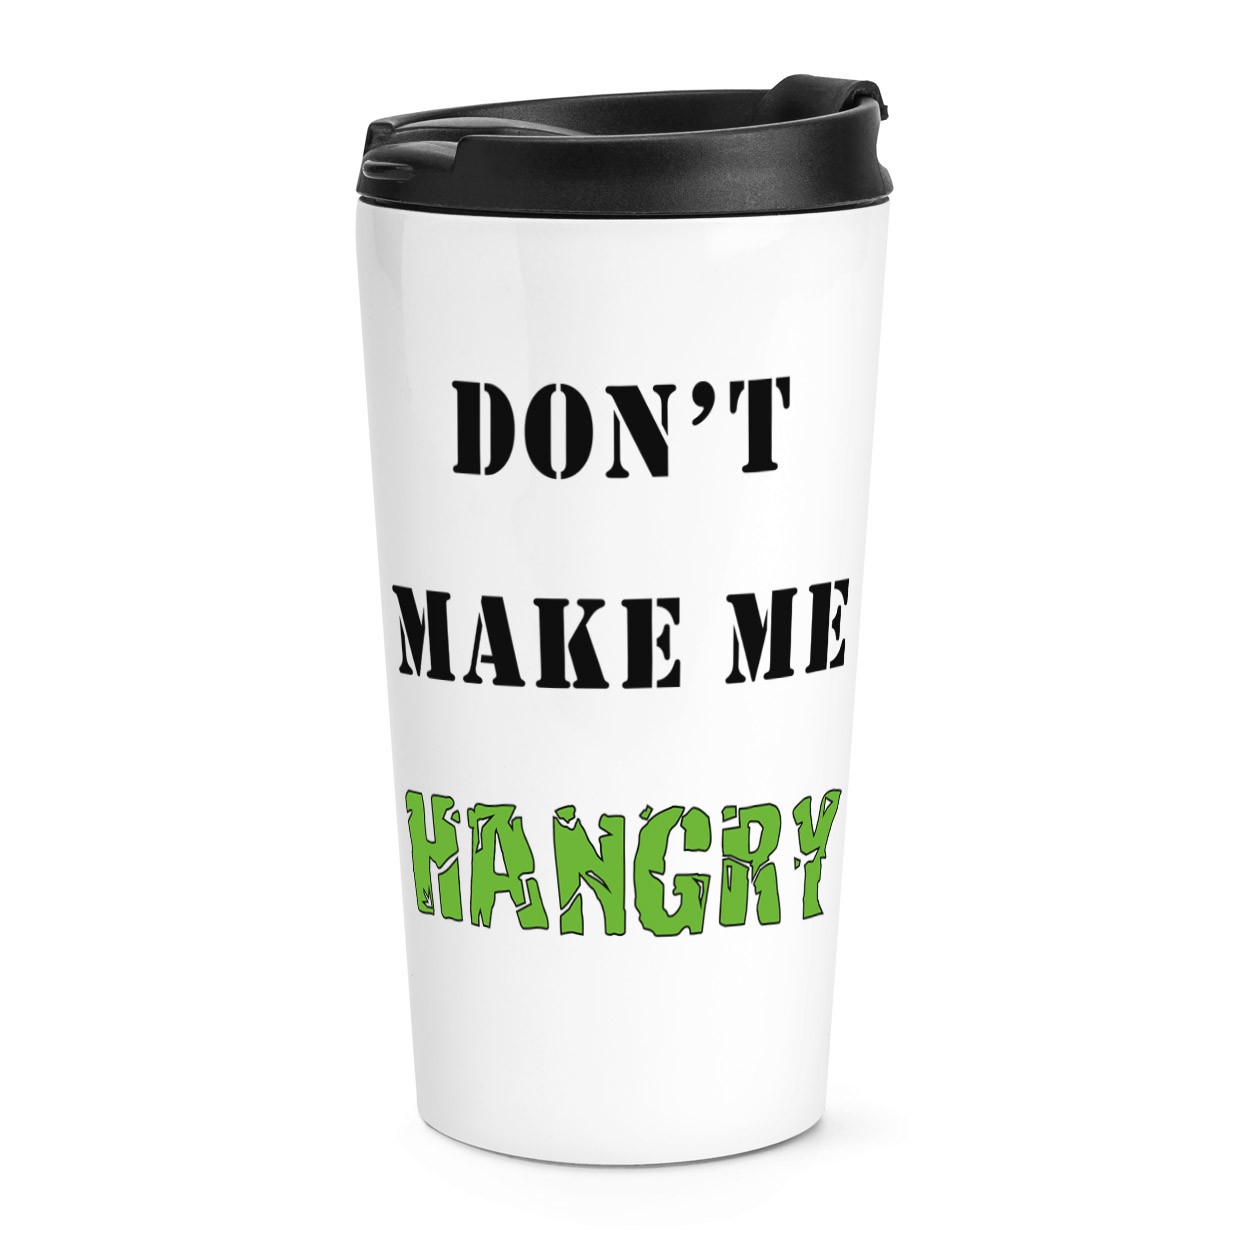 Don't Make Me Hangry Travel Mug Cup